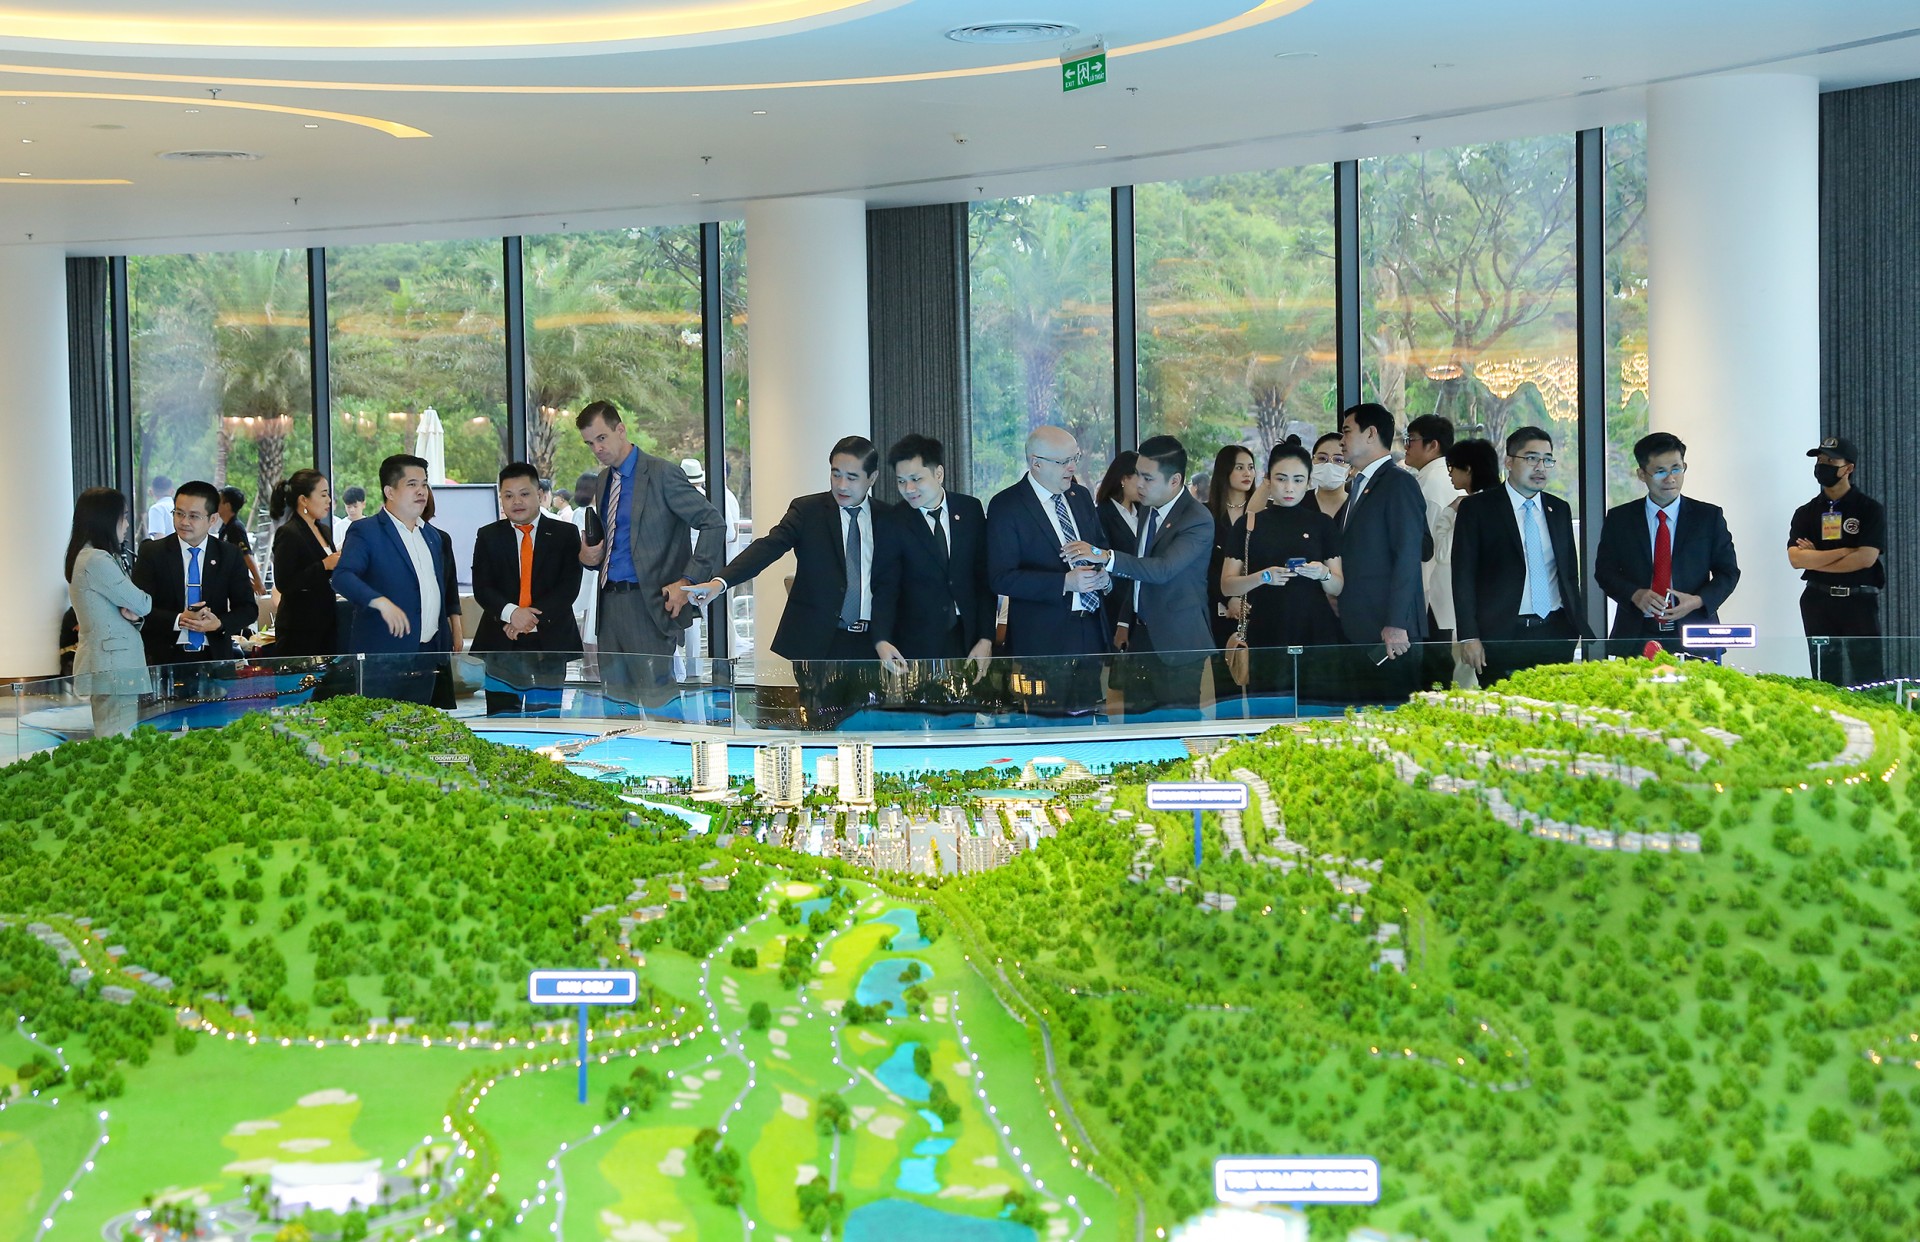 Tập đoàn Hưng Thịnh hợp tác chiến lược với Kone Việt Nam kiến tạp đô thị thông minh và bền vững